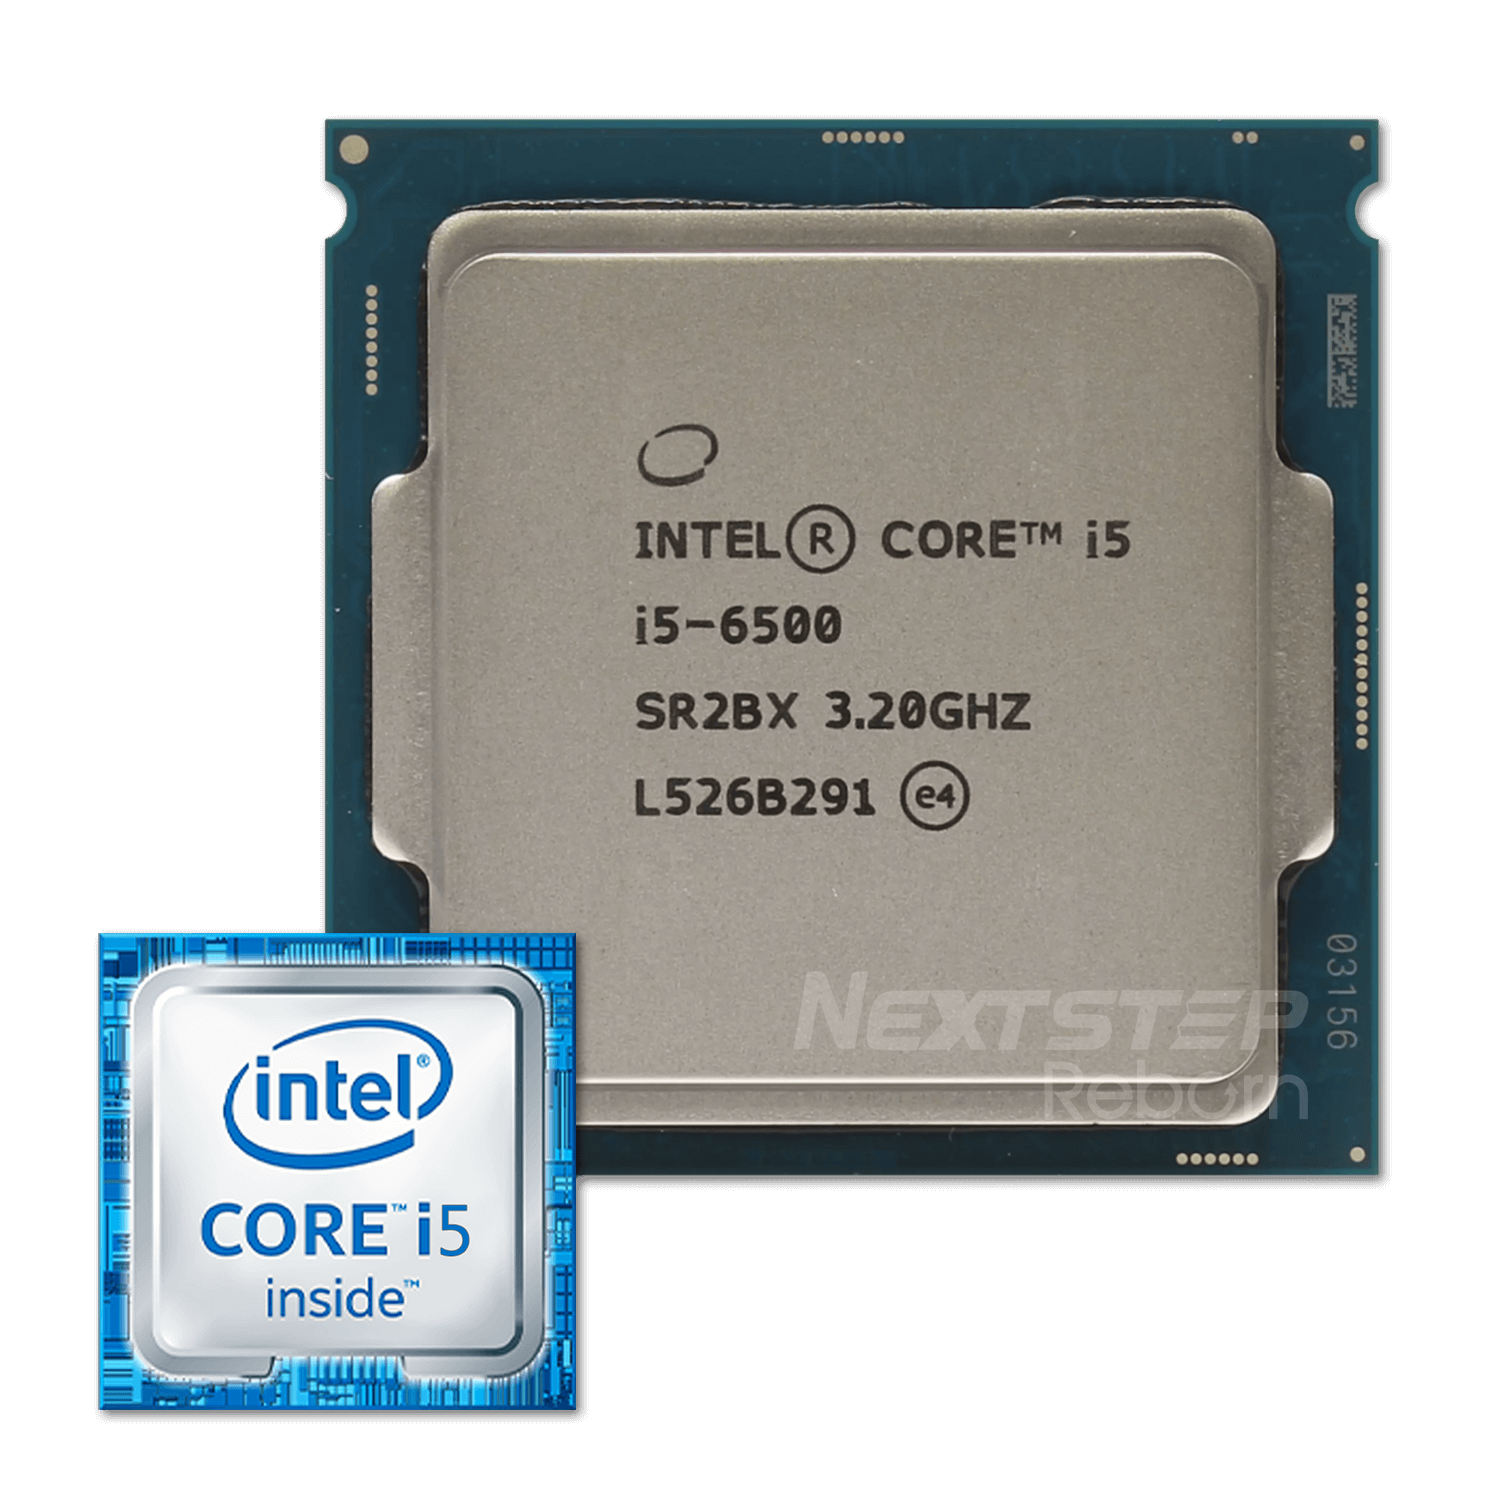 มือสอง) CPU intel Core i5-6500 Cache 6M / 4Core 4Thread / Base